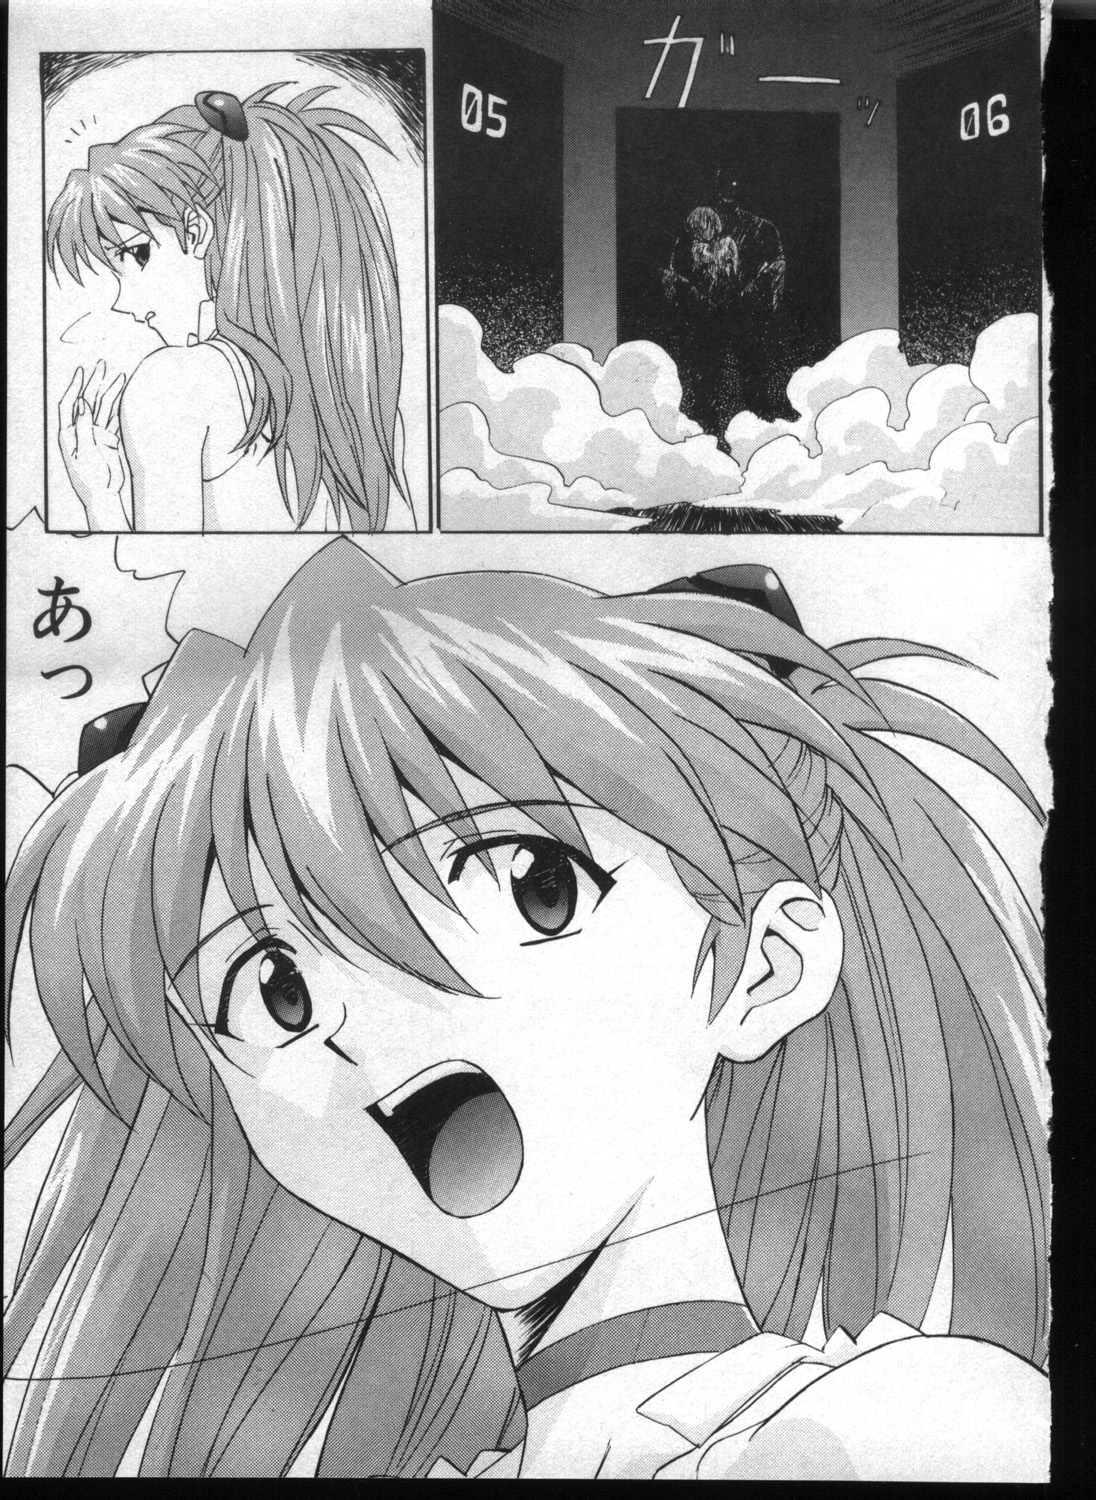 [Anthology] Shitsurakuen 7 | Paradise Lost 7 (Neon Genesis Evangelion) page 7 full